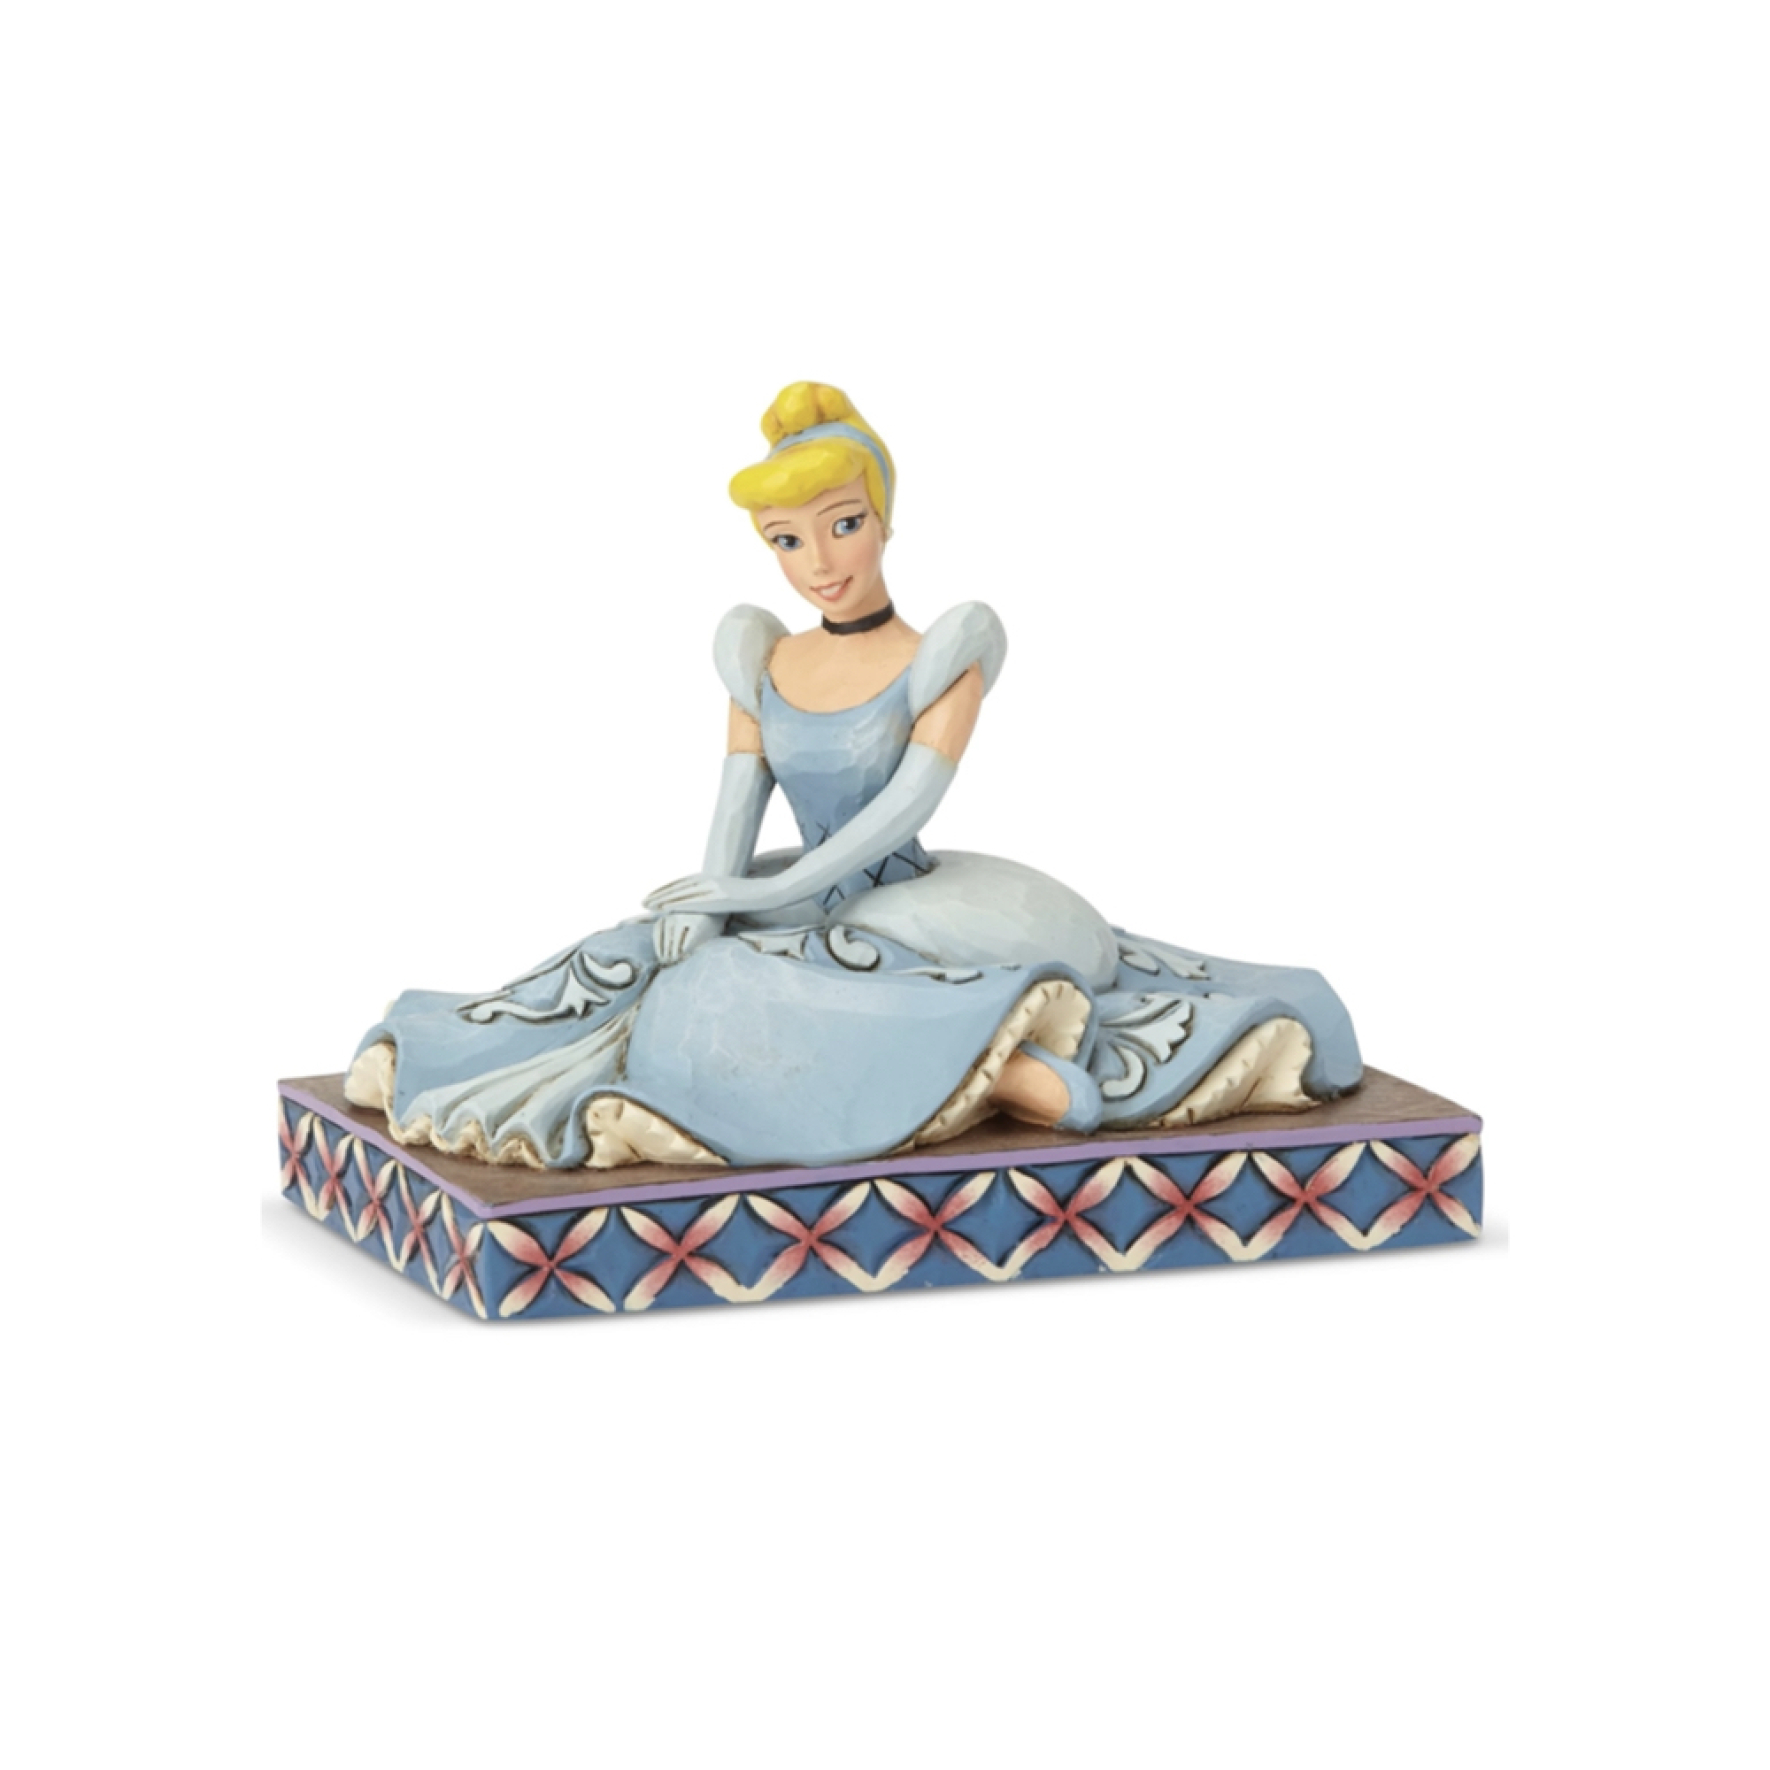  مجسمه دیزنی سیندرلا نشسته Cinderella Personality Pose 